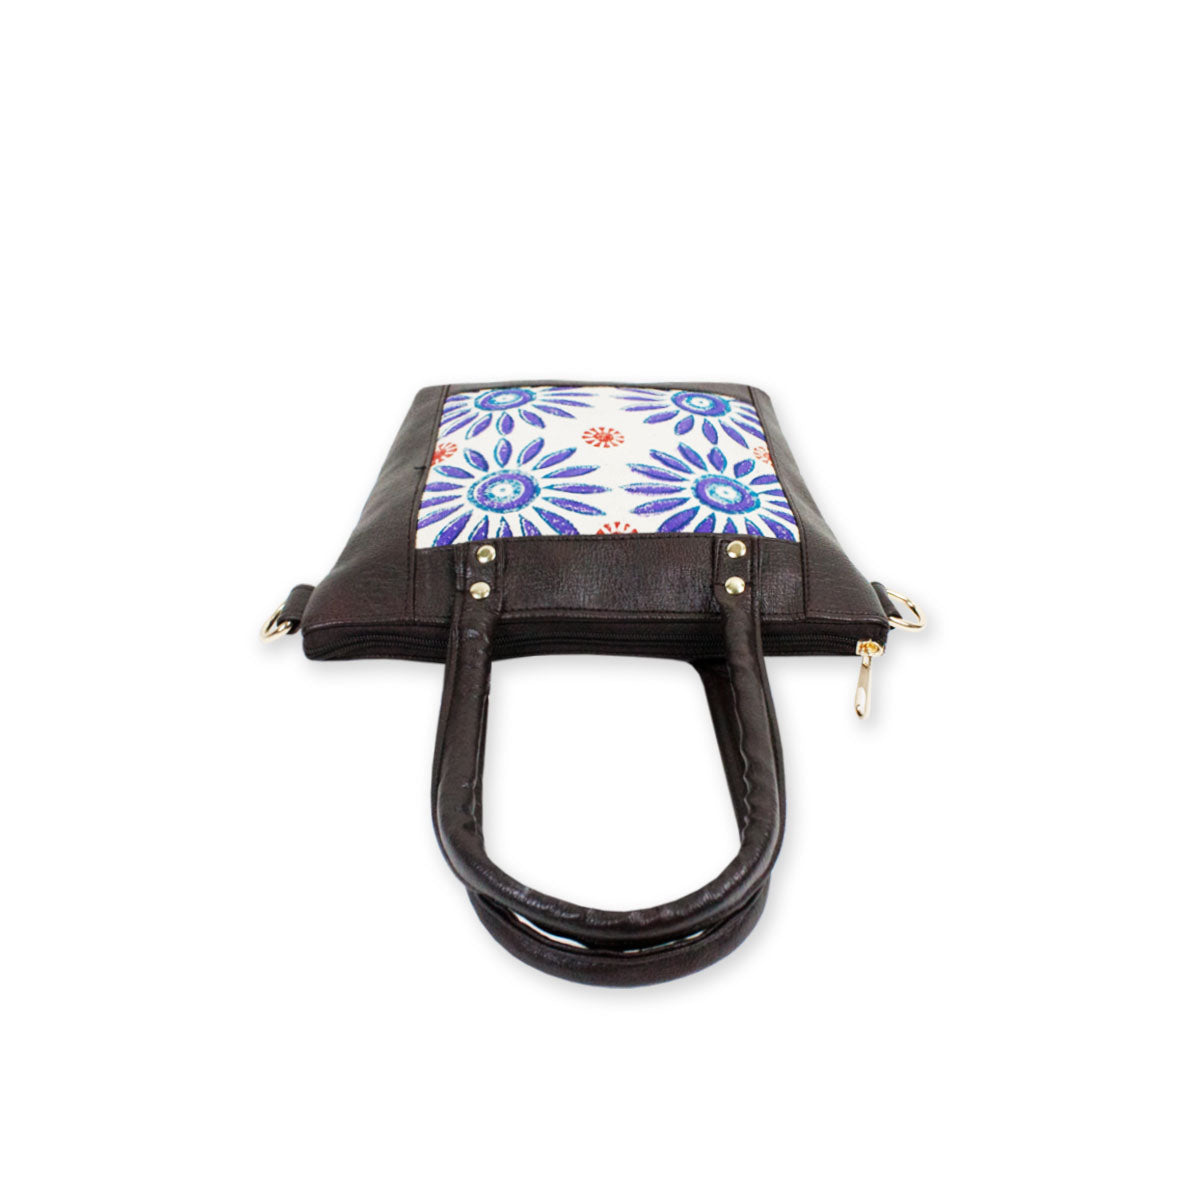 Block-Printed Bloom Handbag with Sling